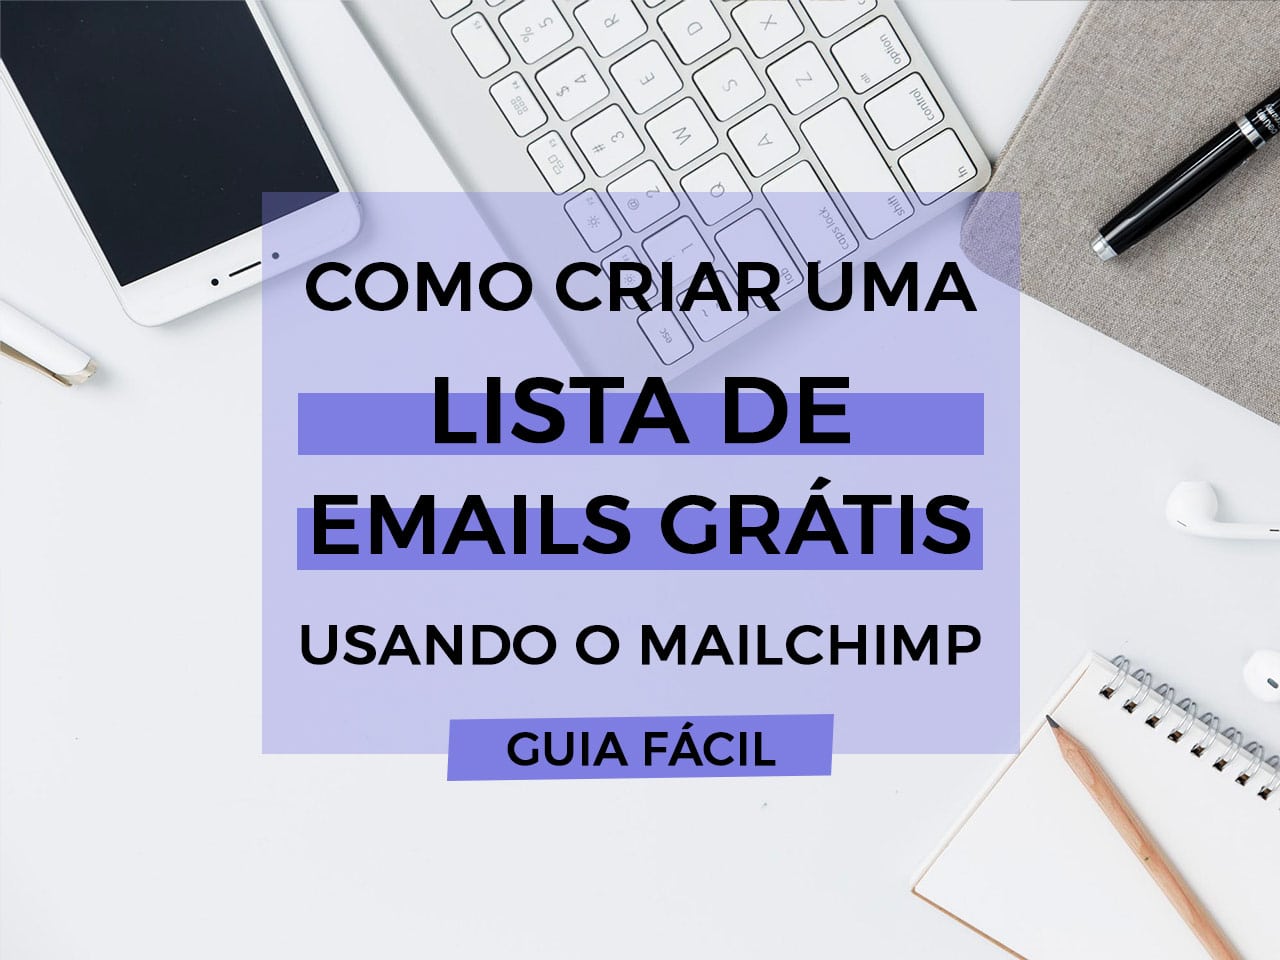 Como criar uma lista de emails grátis usando o MailChimp